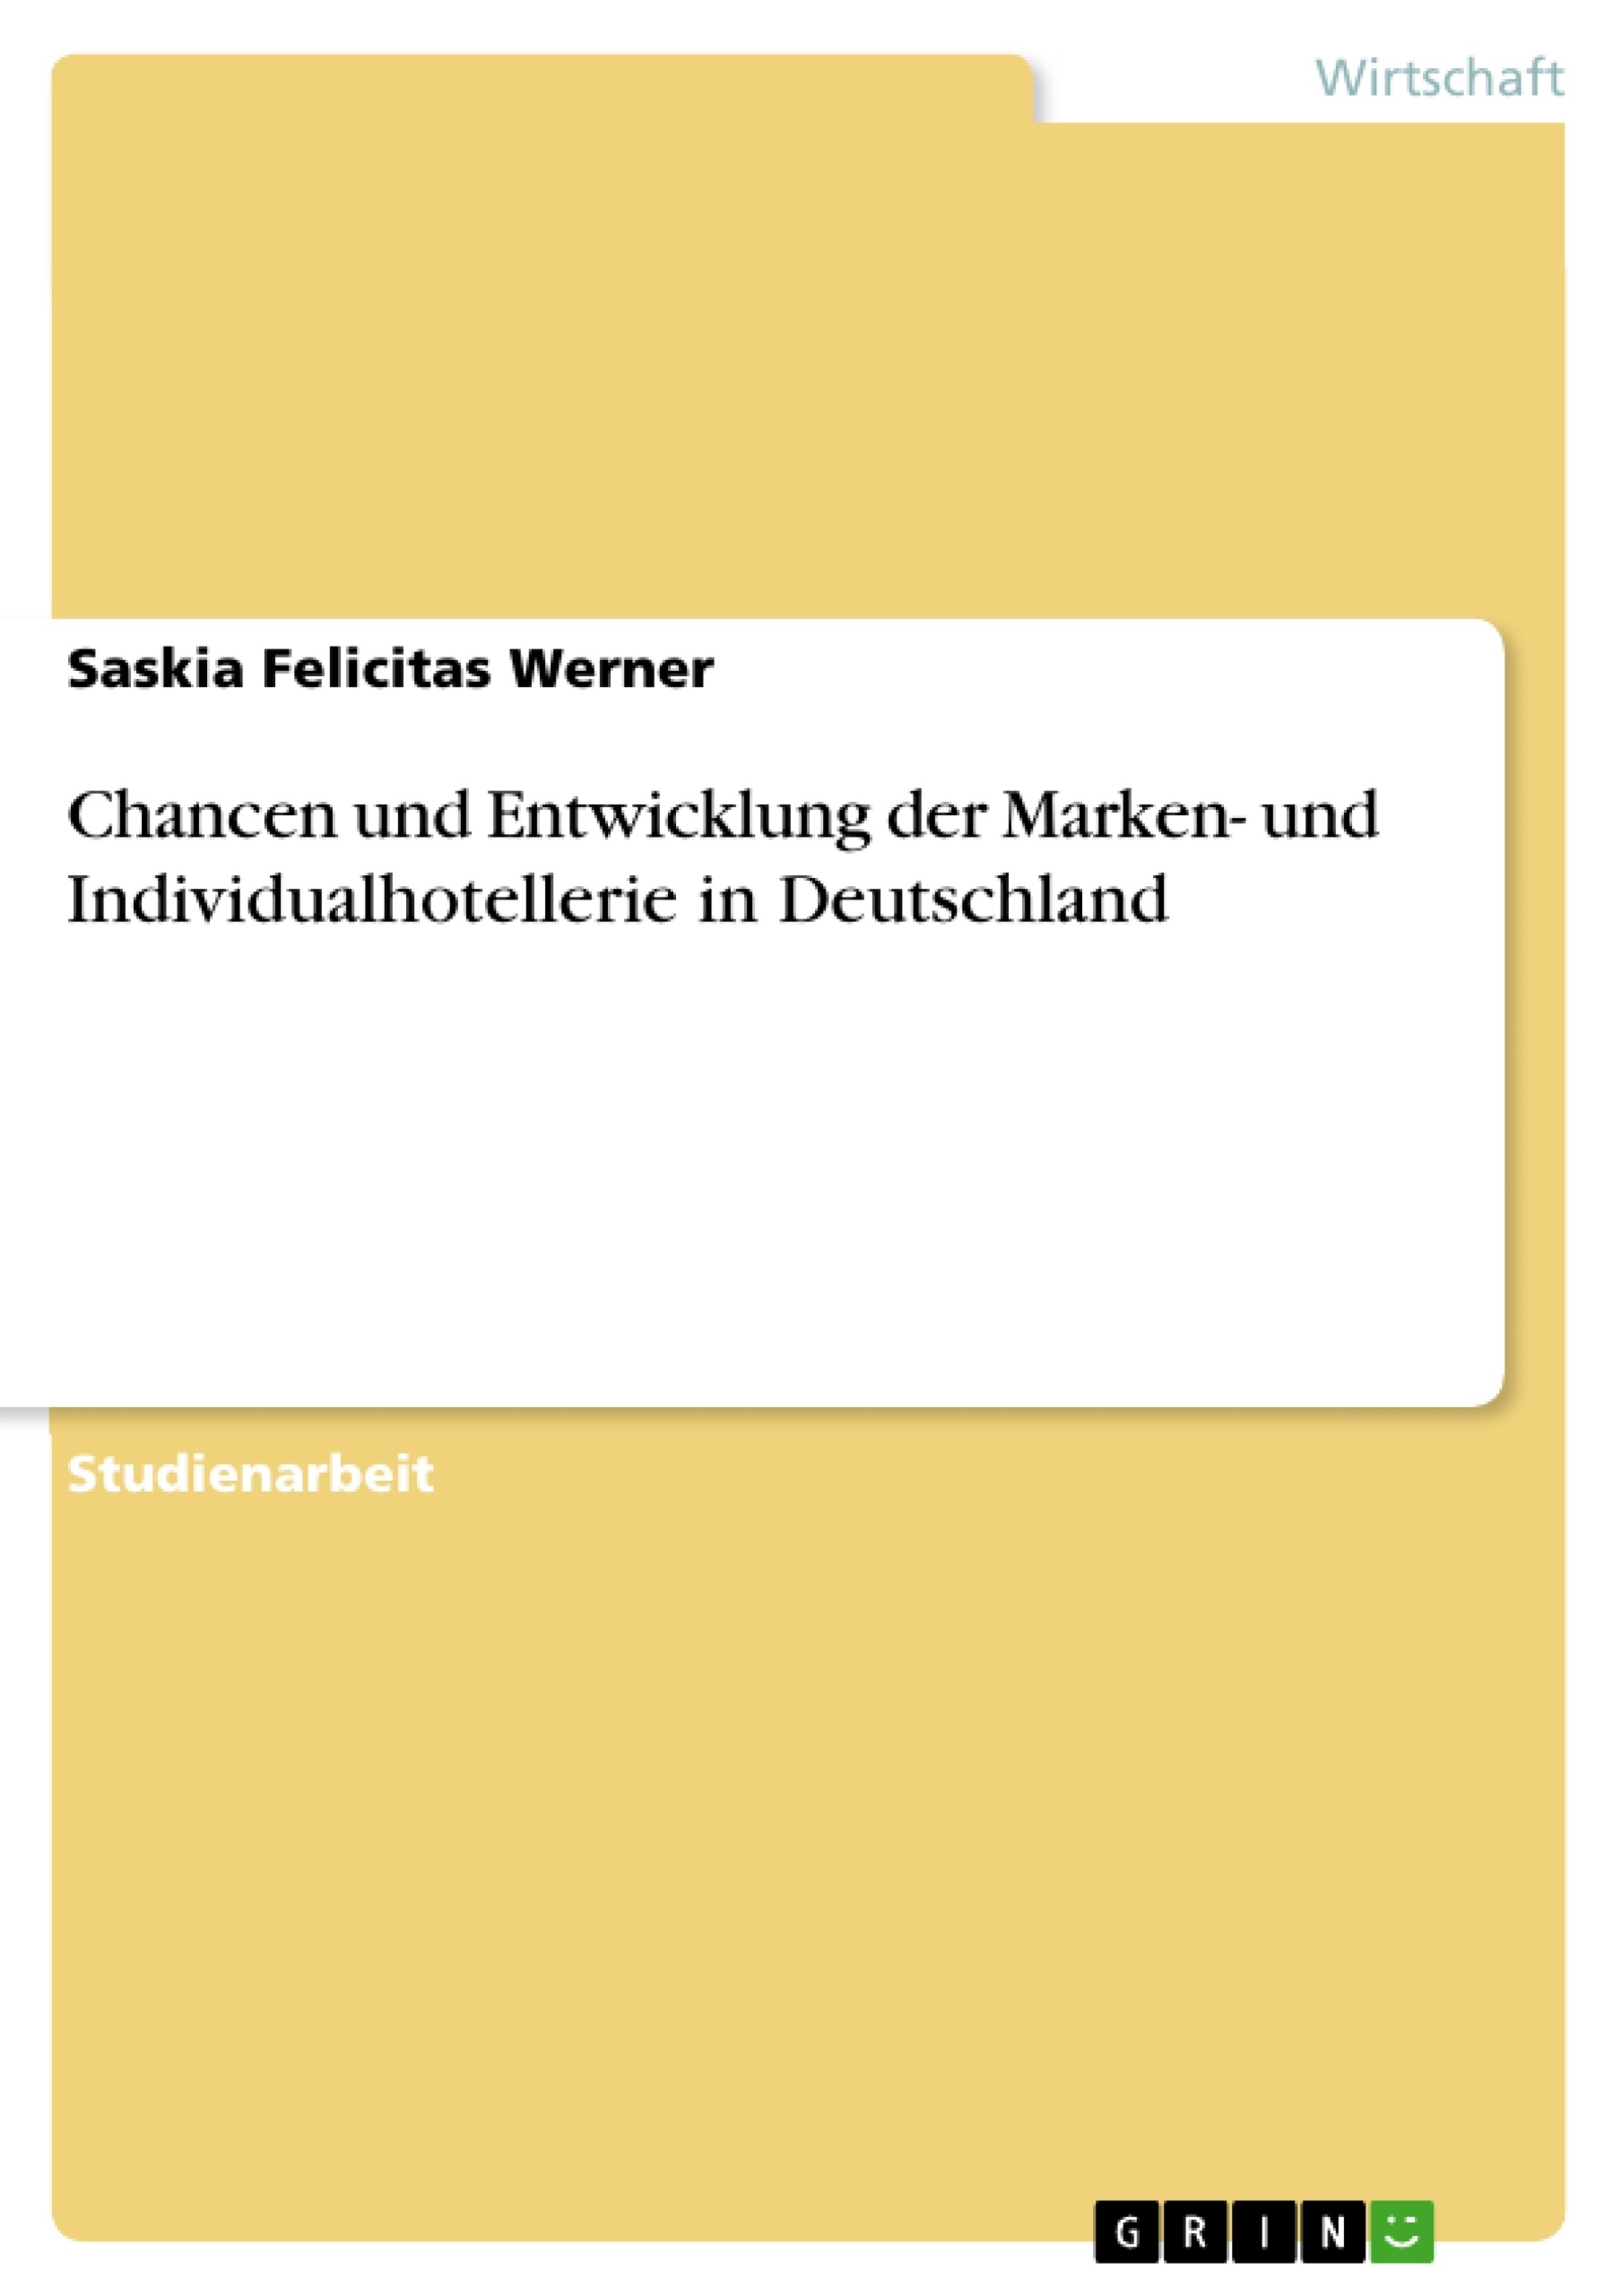 Title: Chancen und Entwicklung der Marken- und Individualhotellerie in Deutschland